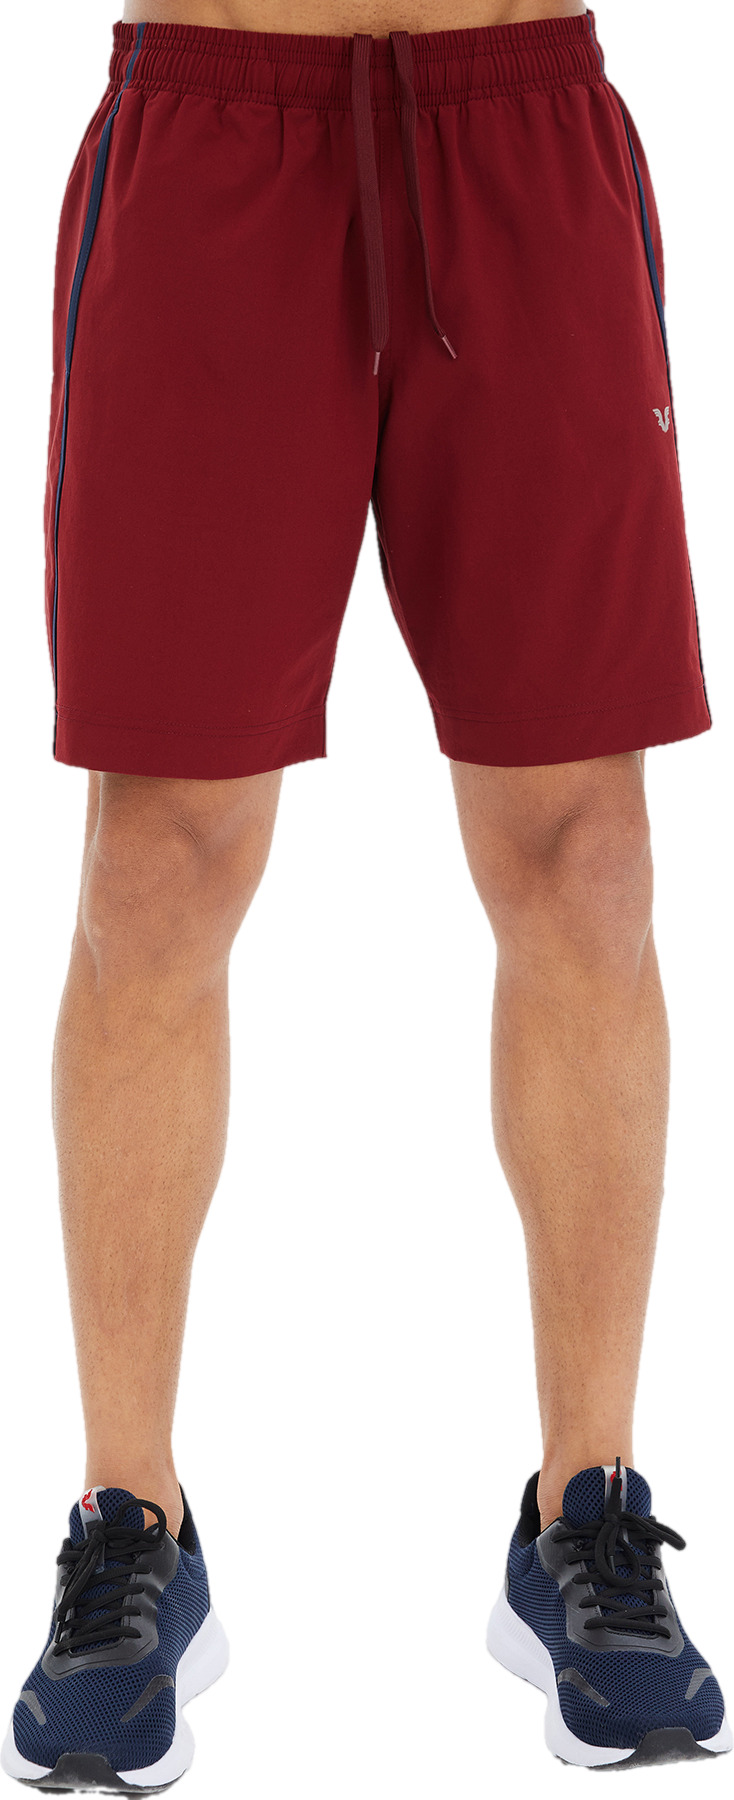 Спортивные шорты мужские Bilcee Men Woven Shorts красные M